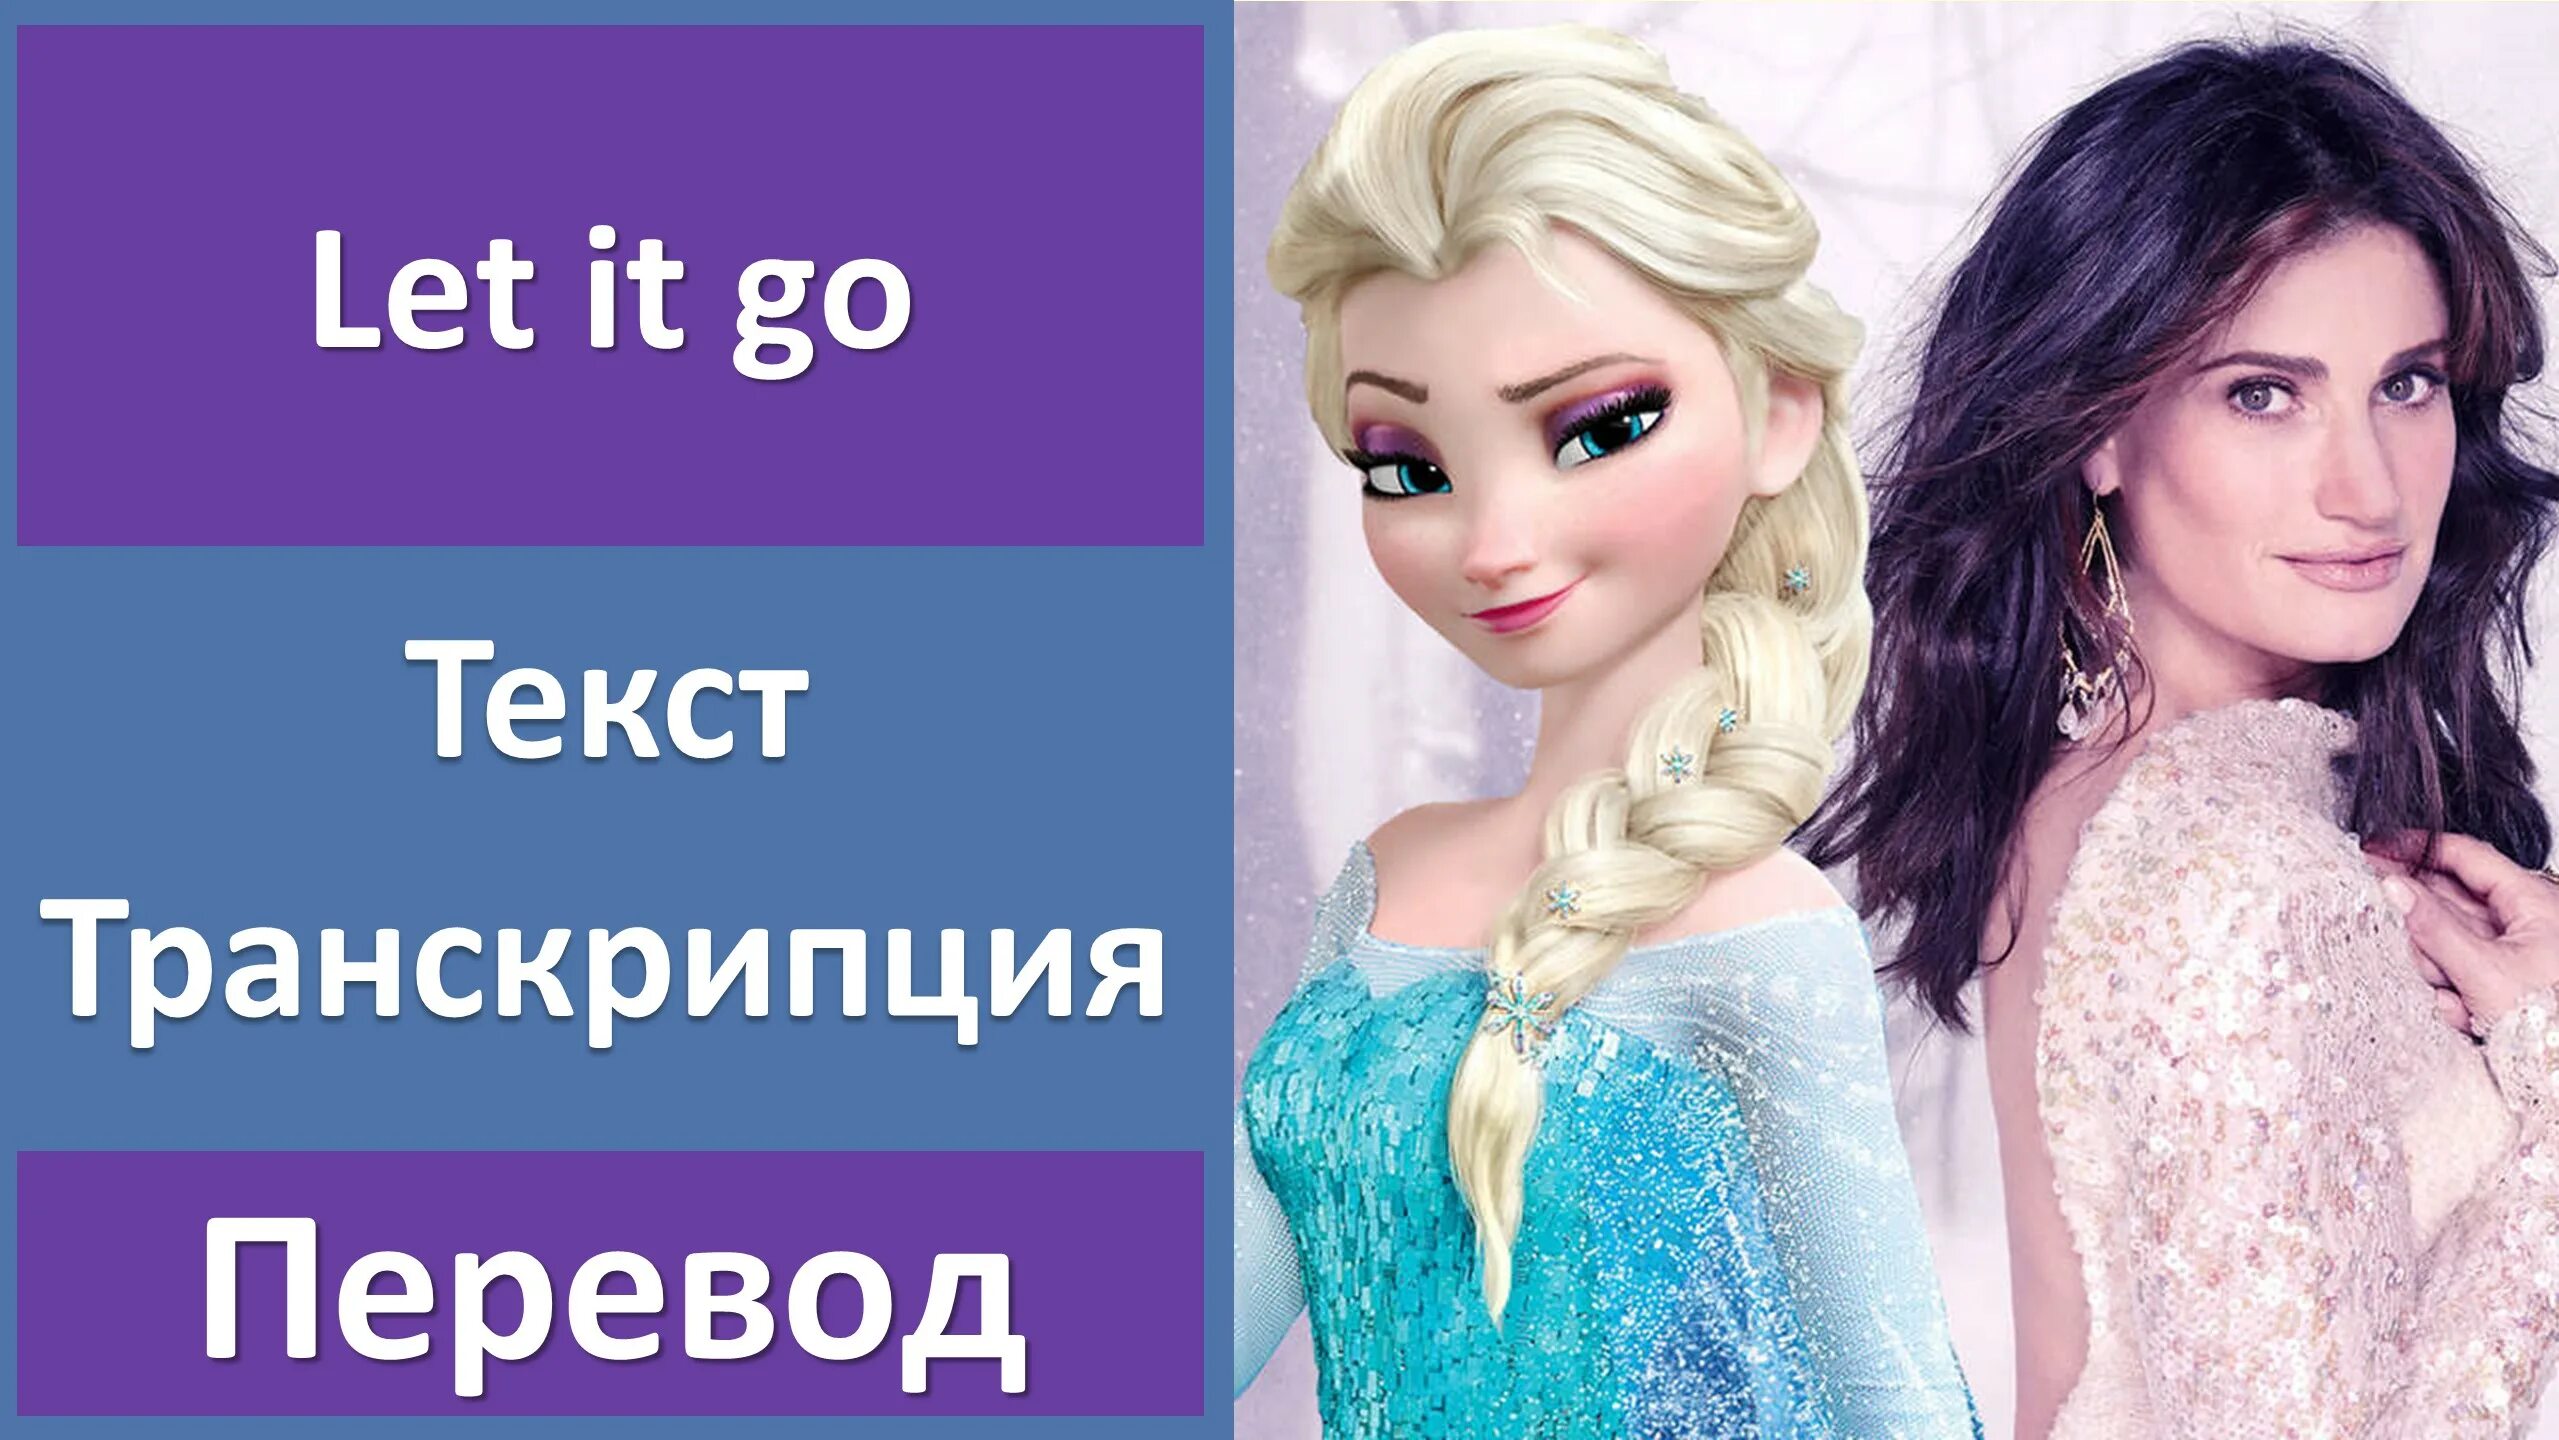 Frozen - Idina Menzel - Let it go. Песня Эльзы текст. Песня Эльзы на английском. Let it go Frozen текст с переводом.